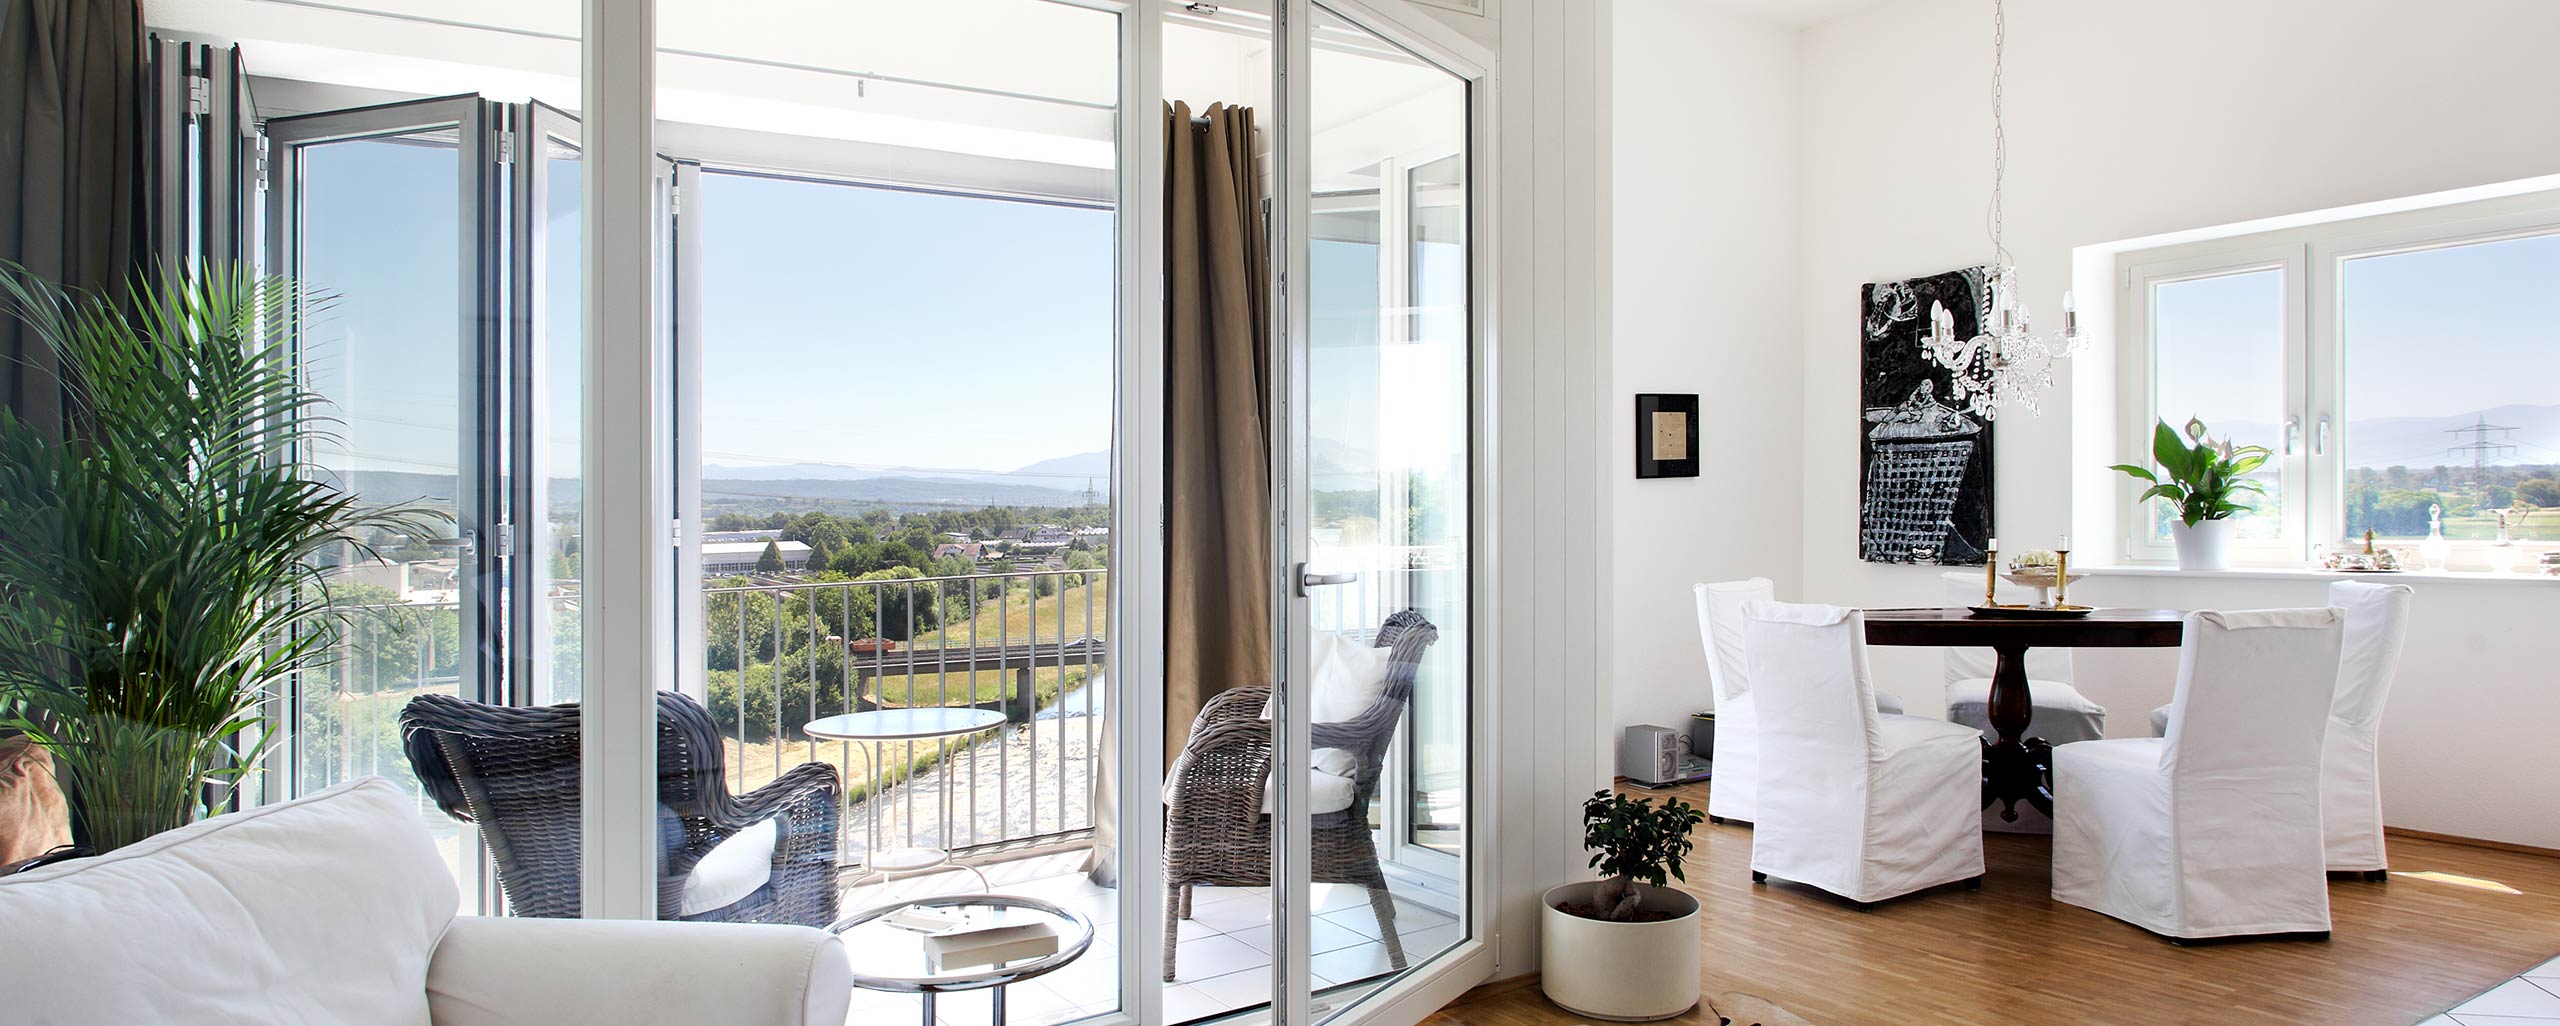 Qualitative Fenster und Balkontüren für jeden Raum bei BWE in Unterschleißheim.